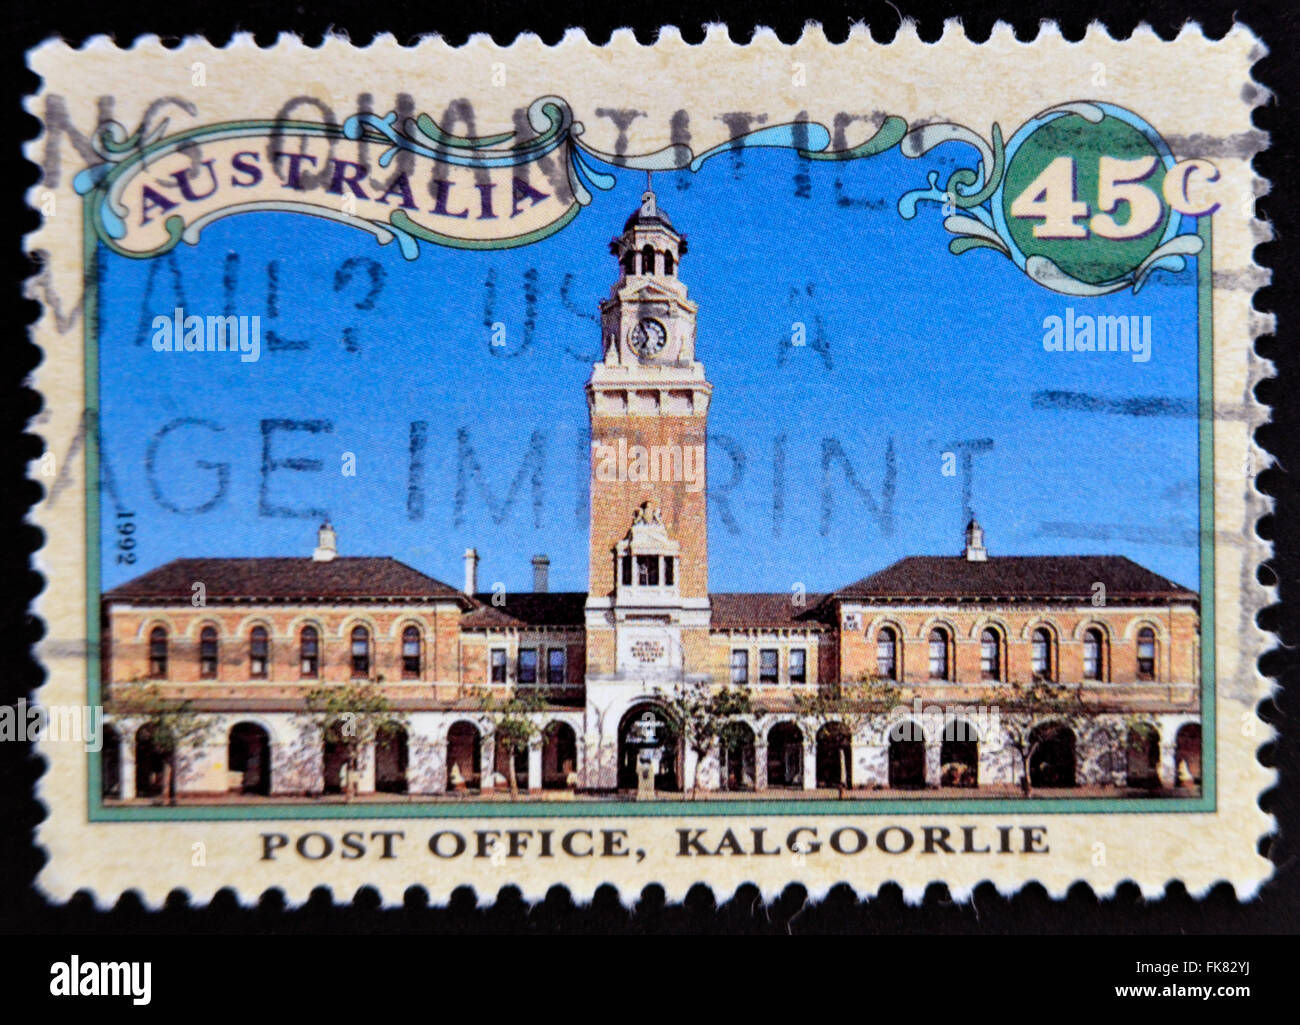 L'AUSTRALIE - circa 1992 : timbre imprimé dans l'Australie montre un bureau de poste, Kalgoorlie, Australie de l'Ouest, vers 1992 Banque D'Images